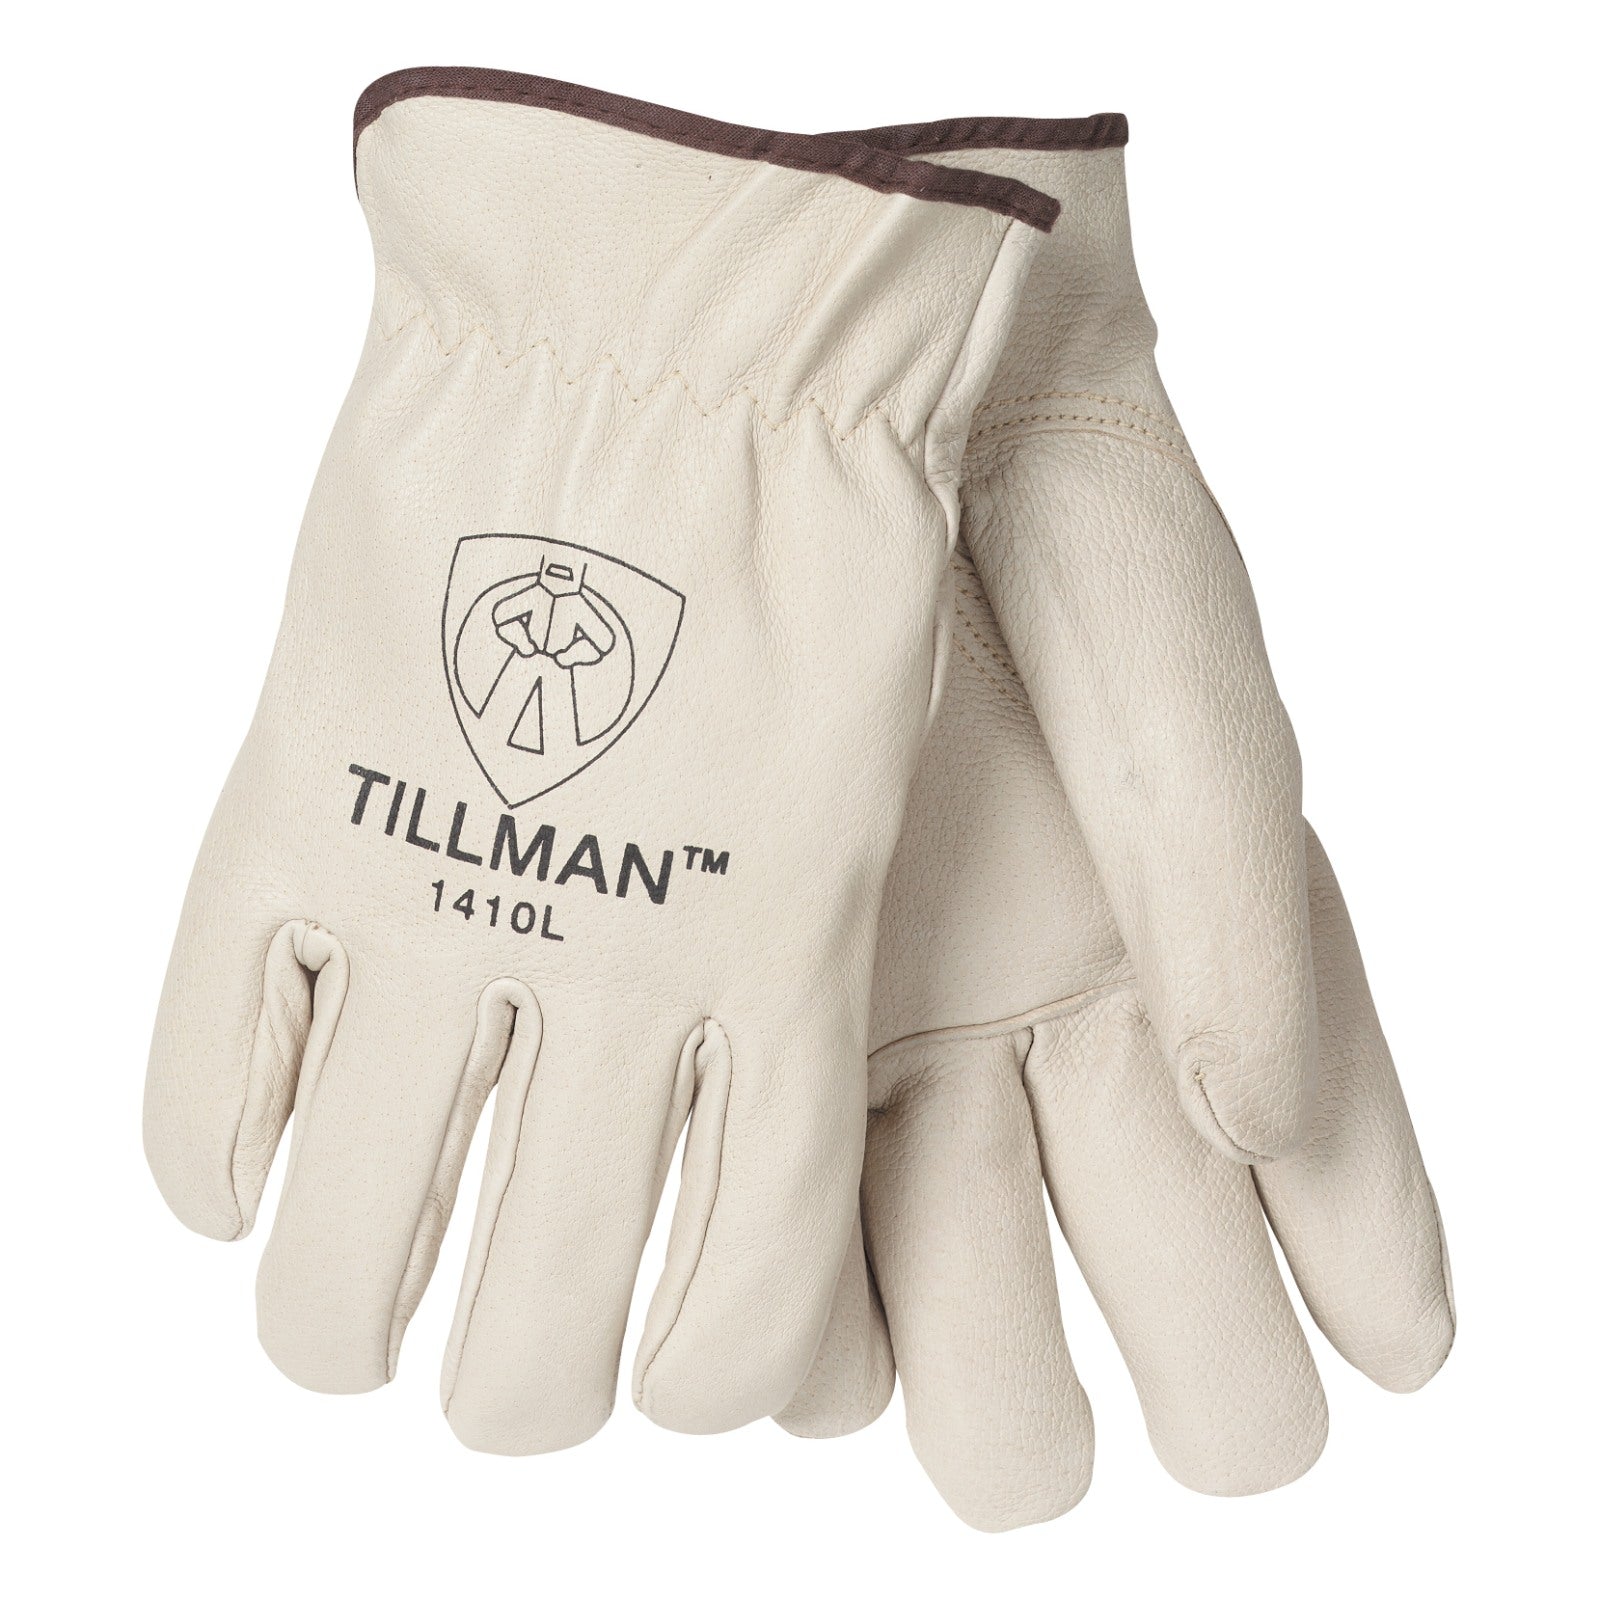 Tillman 1410 Drivers & TIG Welding Gloves